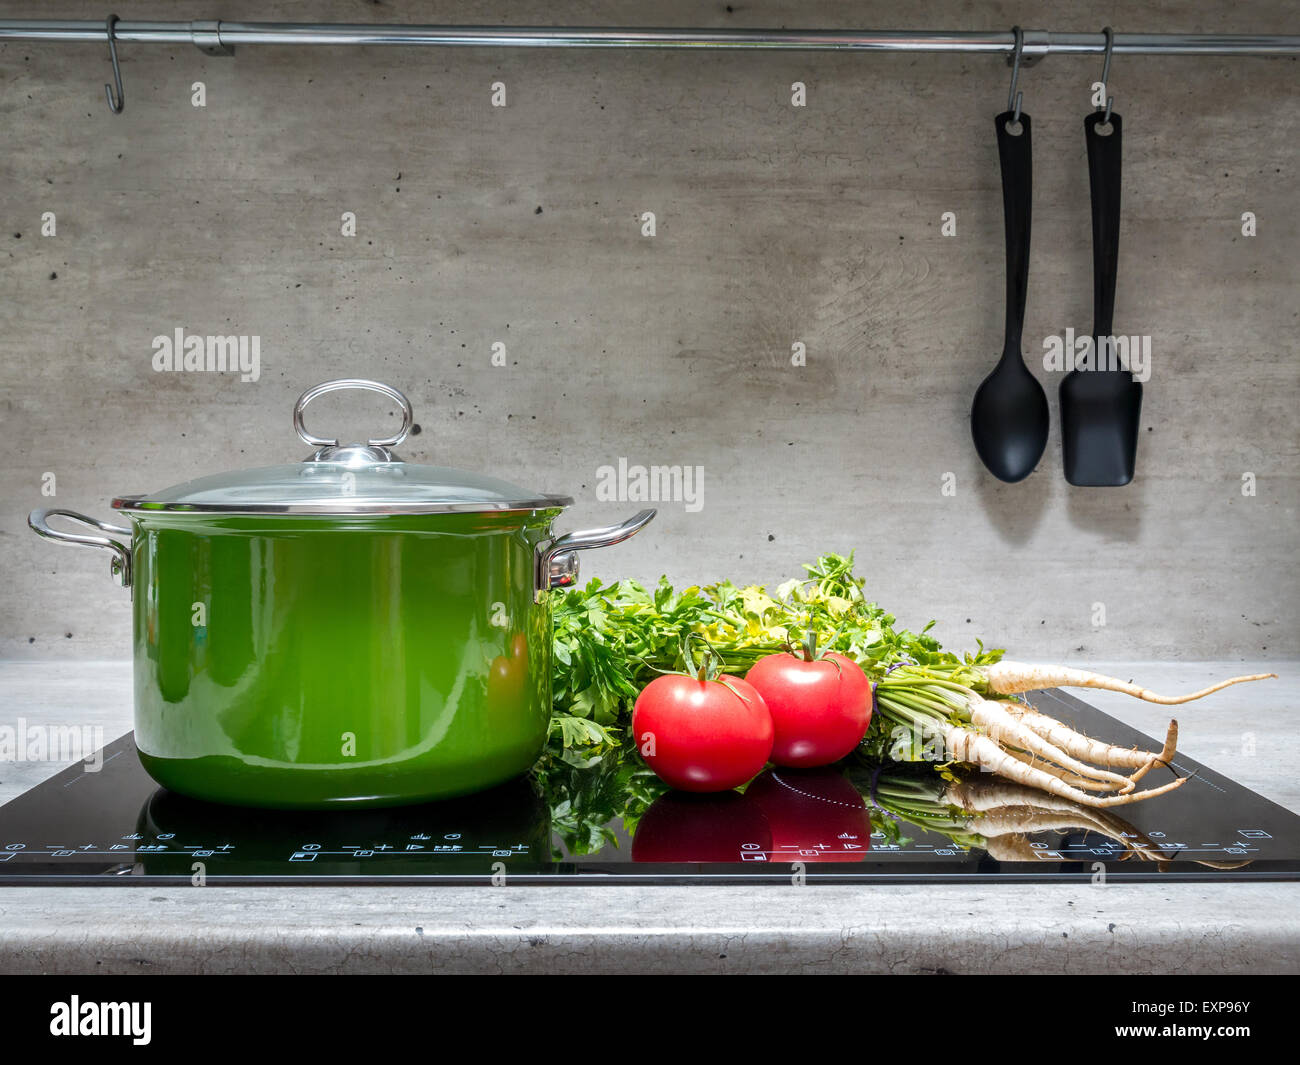 Smalto verde stewpot con prezzemolo e due pomodori nero sul fornello ad induzione Foto Stock